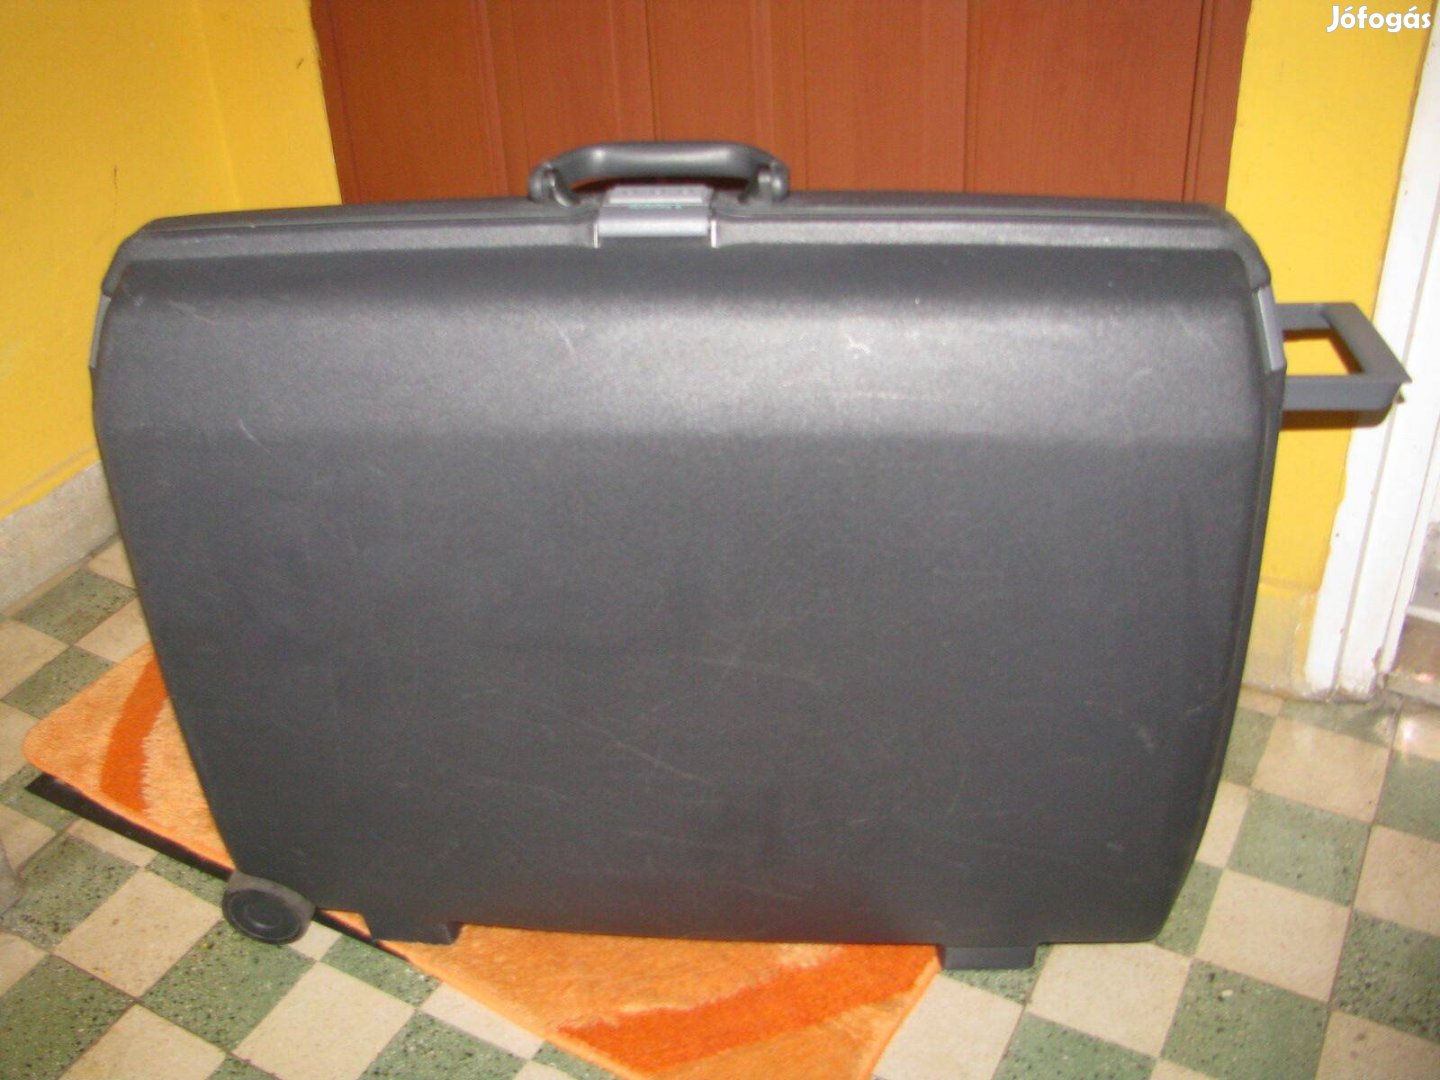 Samsonite gurulós bőrönd, 70x56x24, jó számzár, bombabiztos